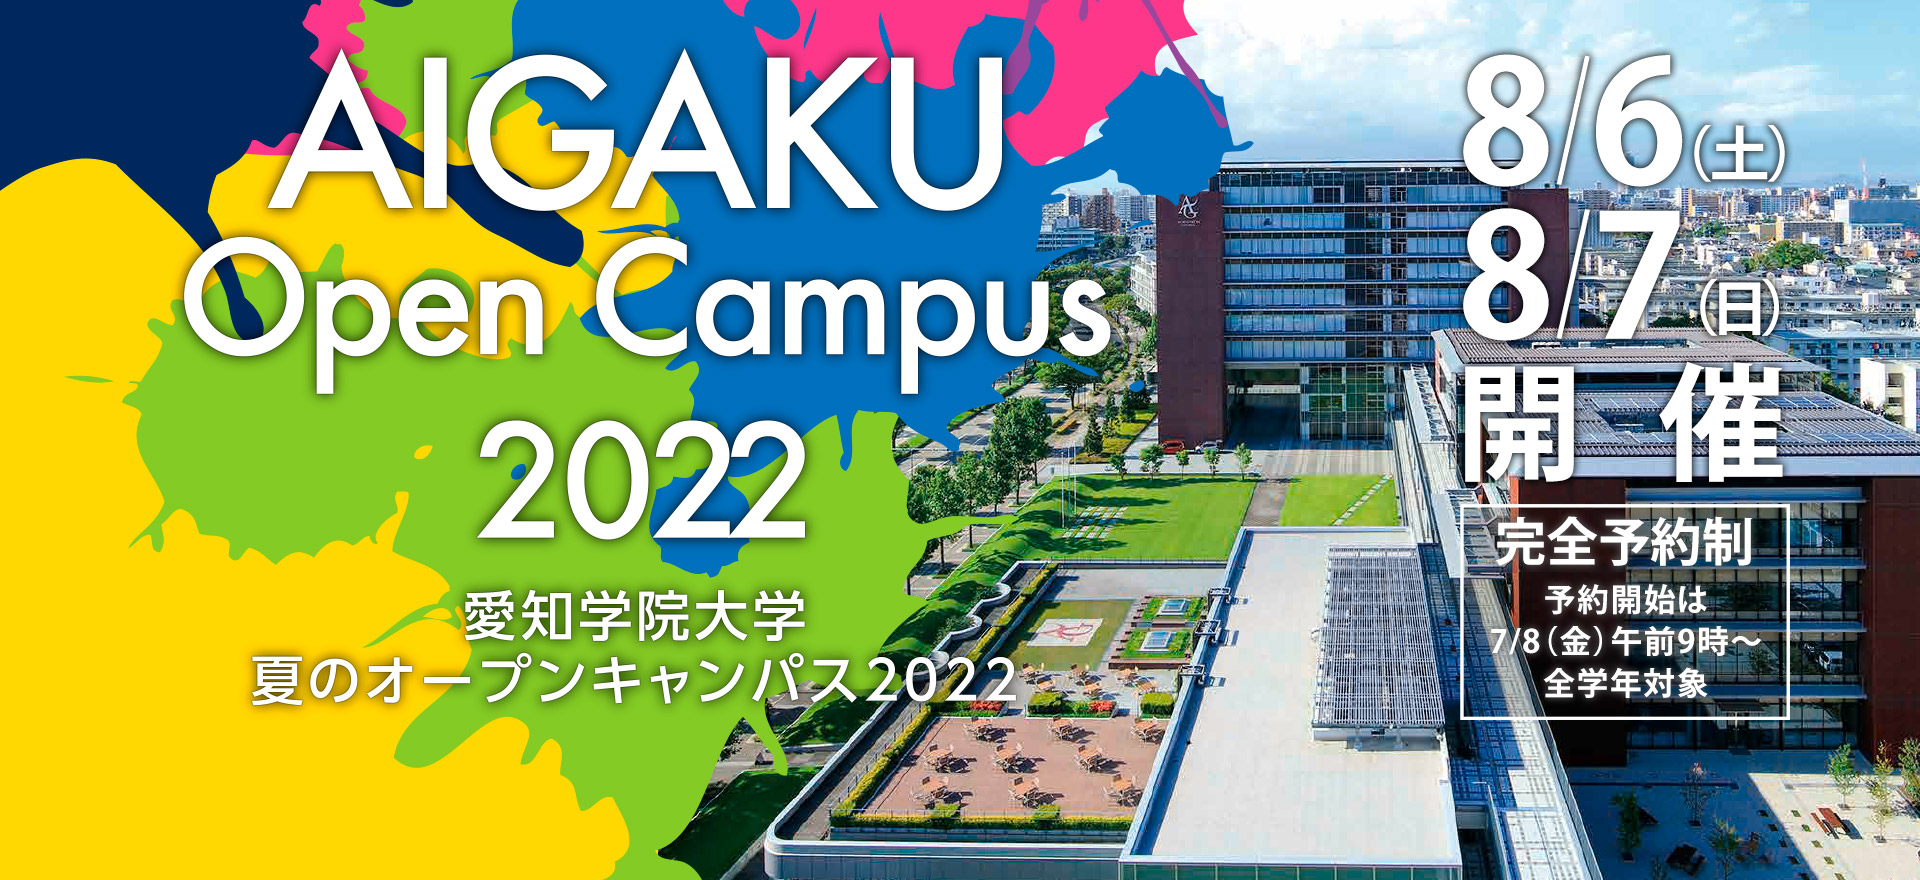 Go To AIGAKU! Open Campus 2022